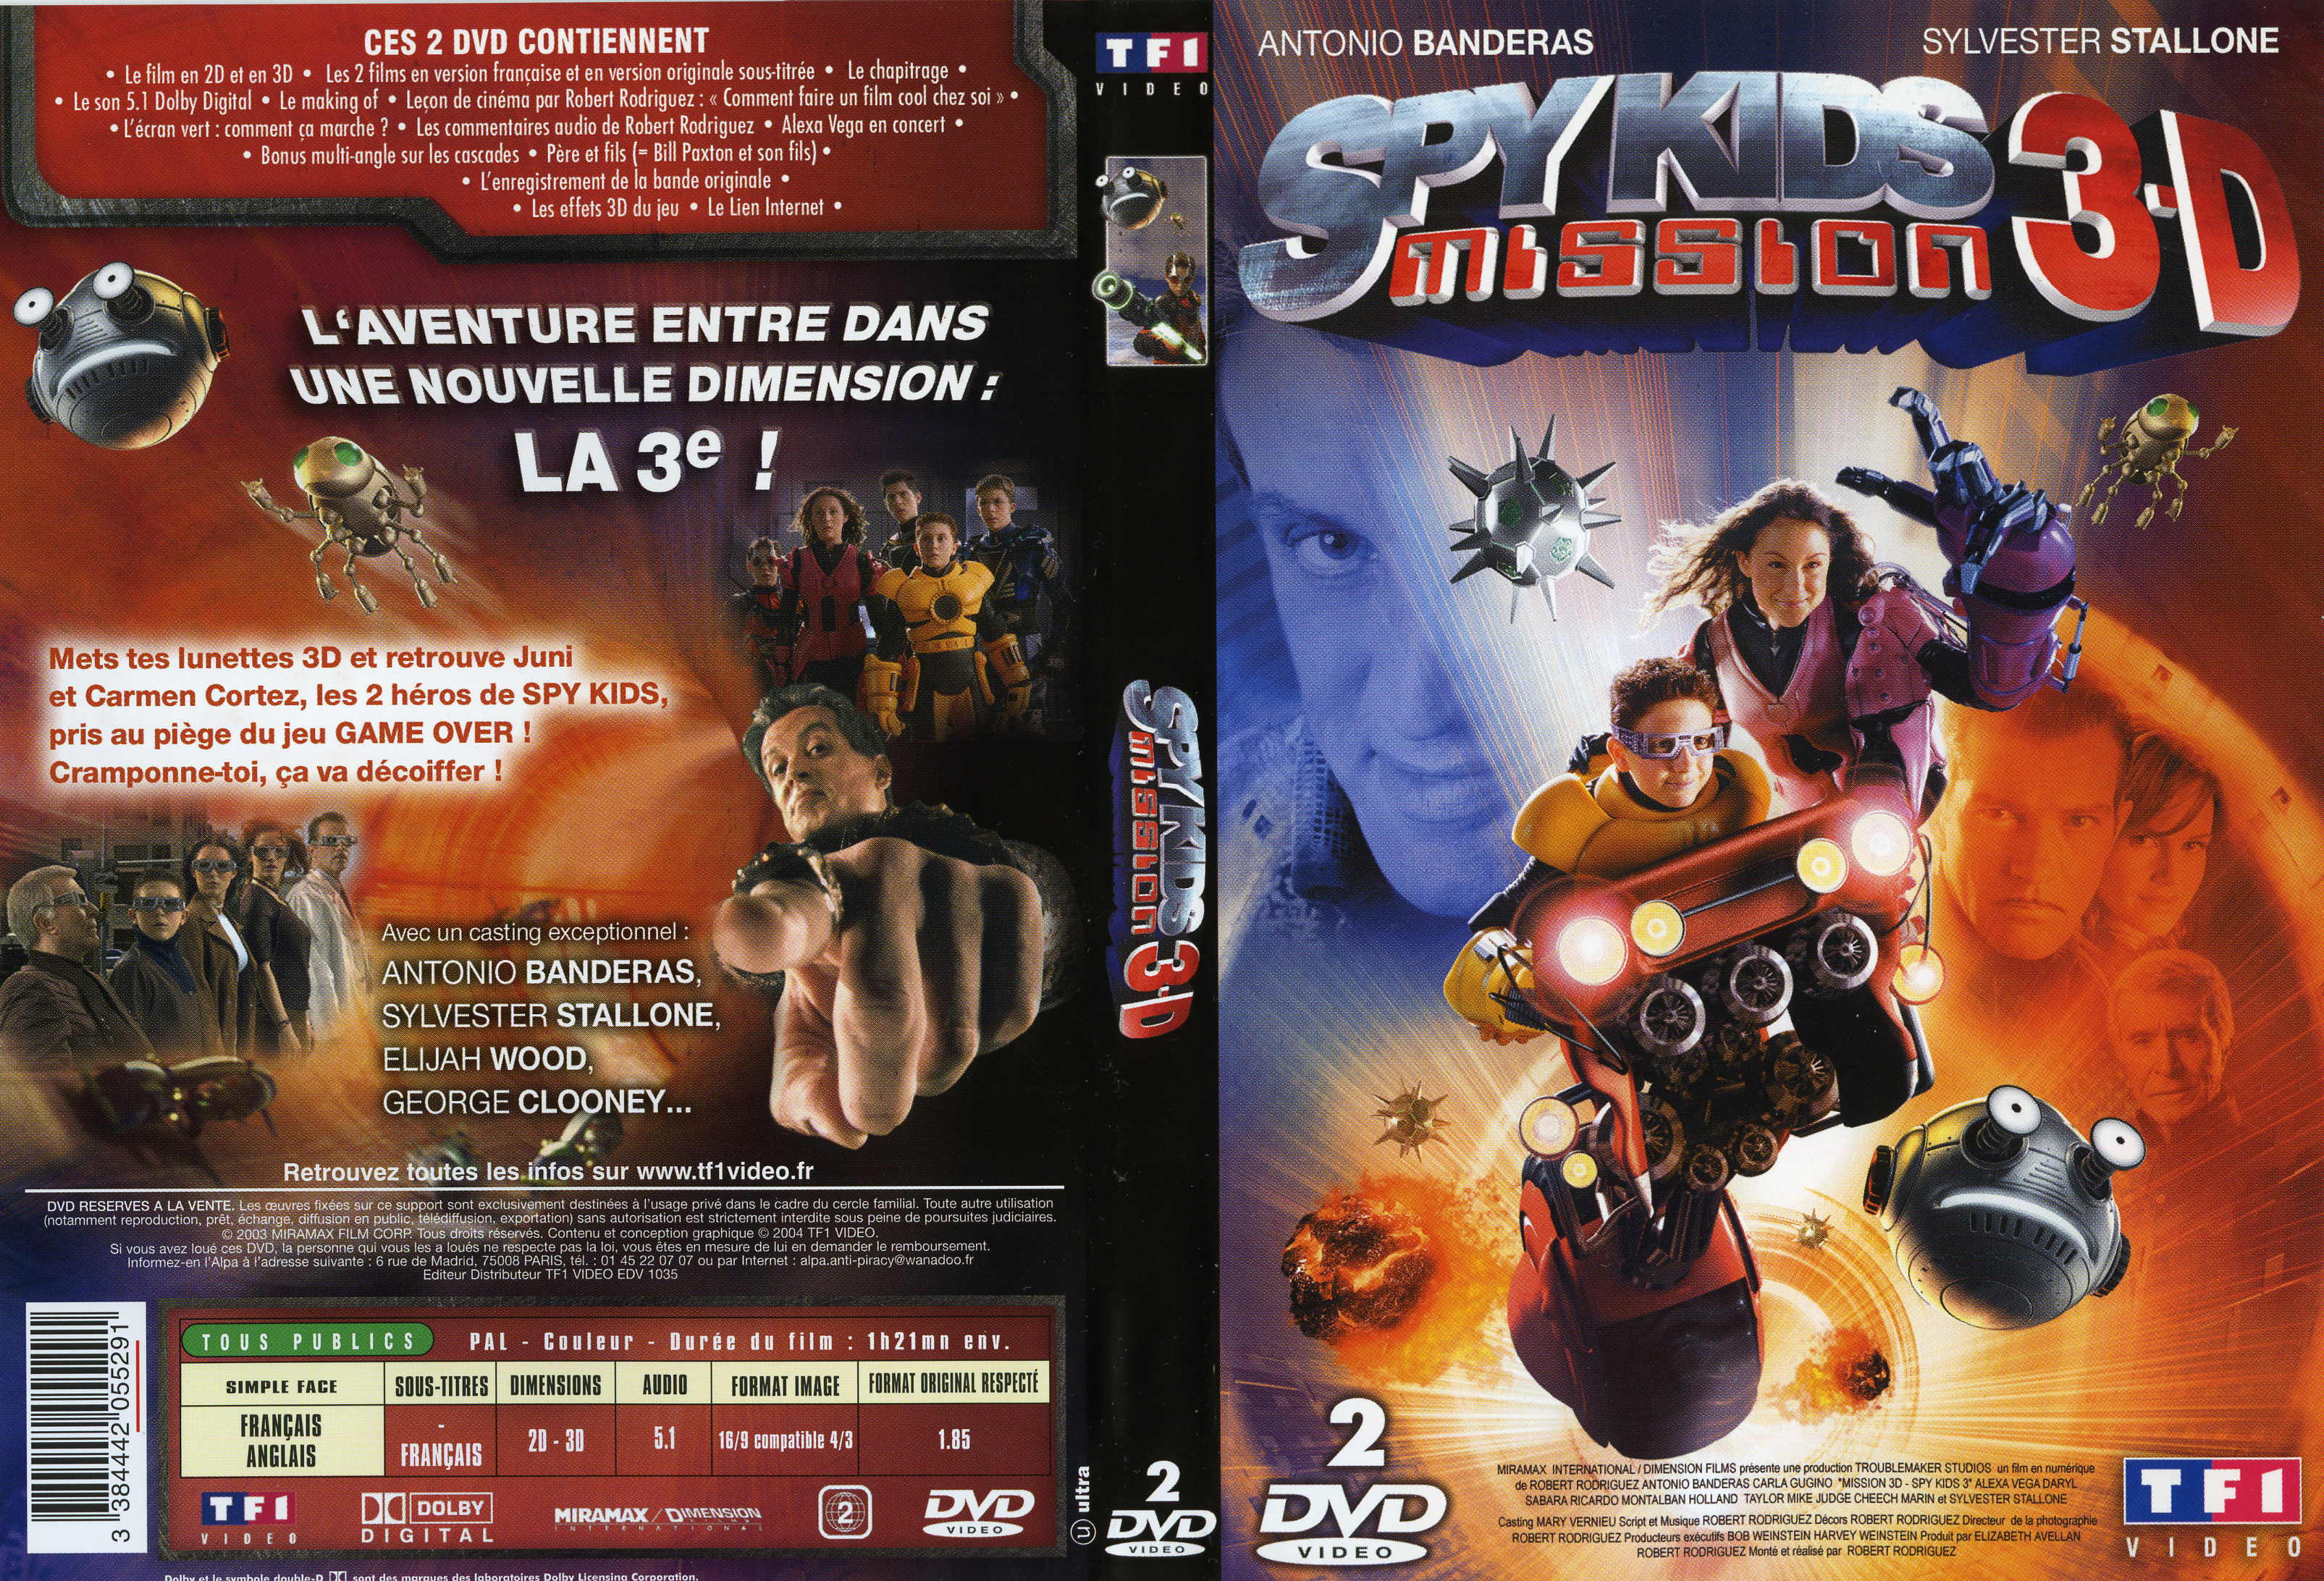 Jaquette DVD Spy kids 3D v2